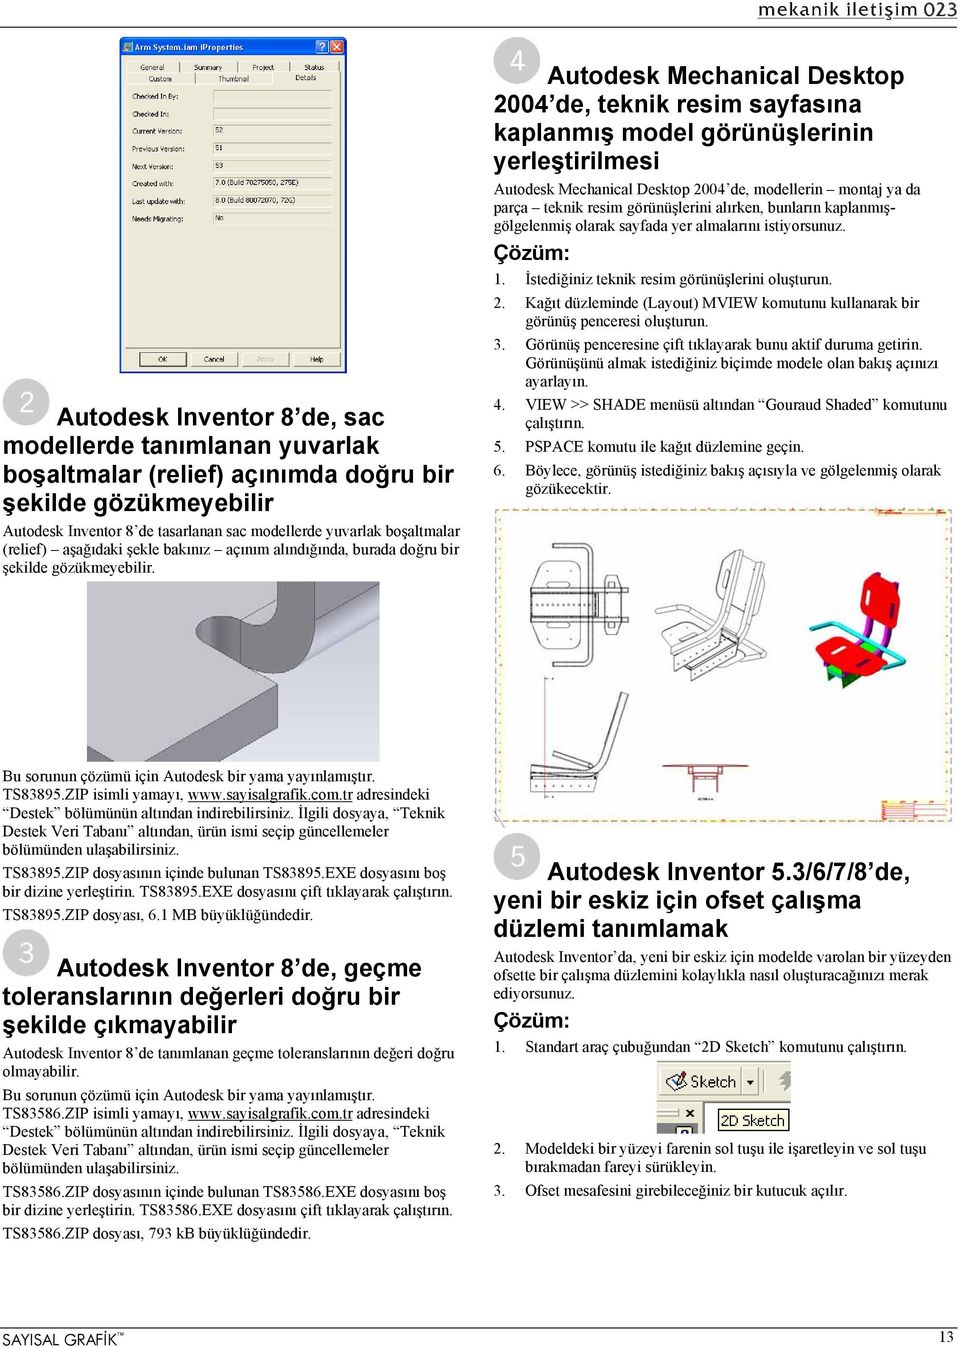 Autodesk Mechanical Desktop 2004 de, teknik resim sayfasına kaplanmış model görünüşlerinin yerleştirilmesi Autodesk Mechanical Desktop 2004 de, modellerin montaj ya da parça teknik resim